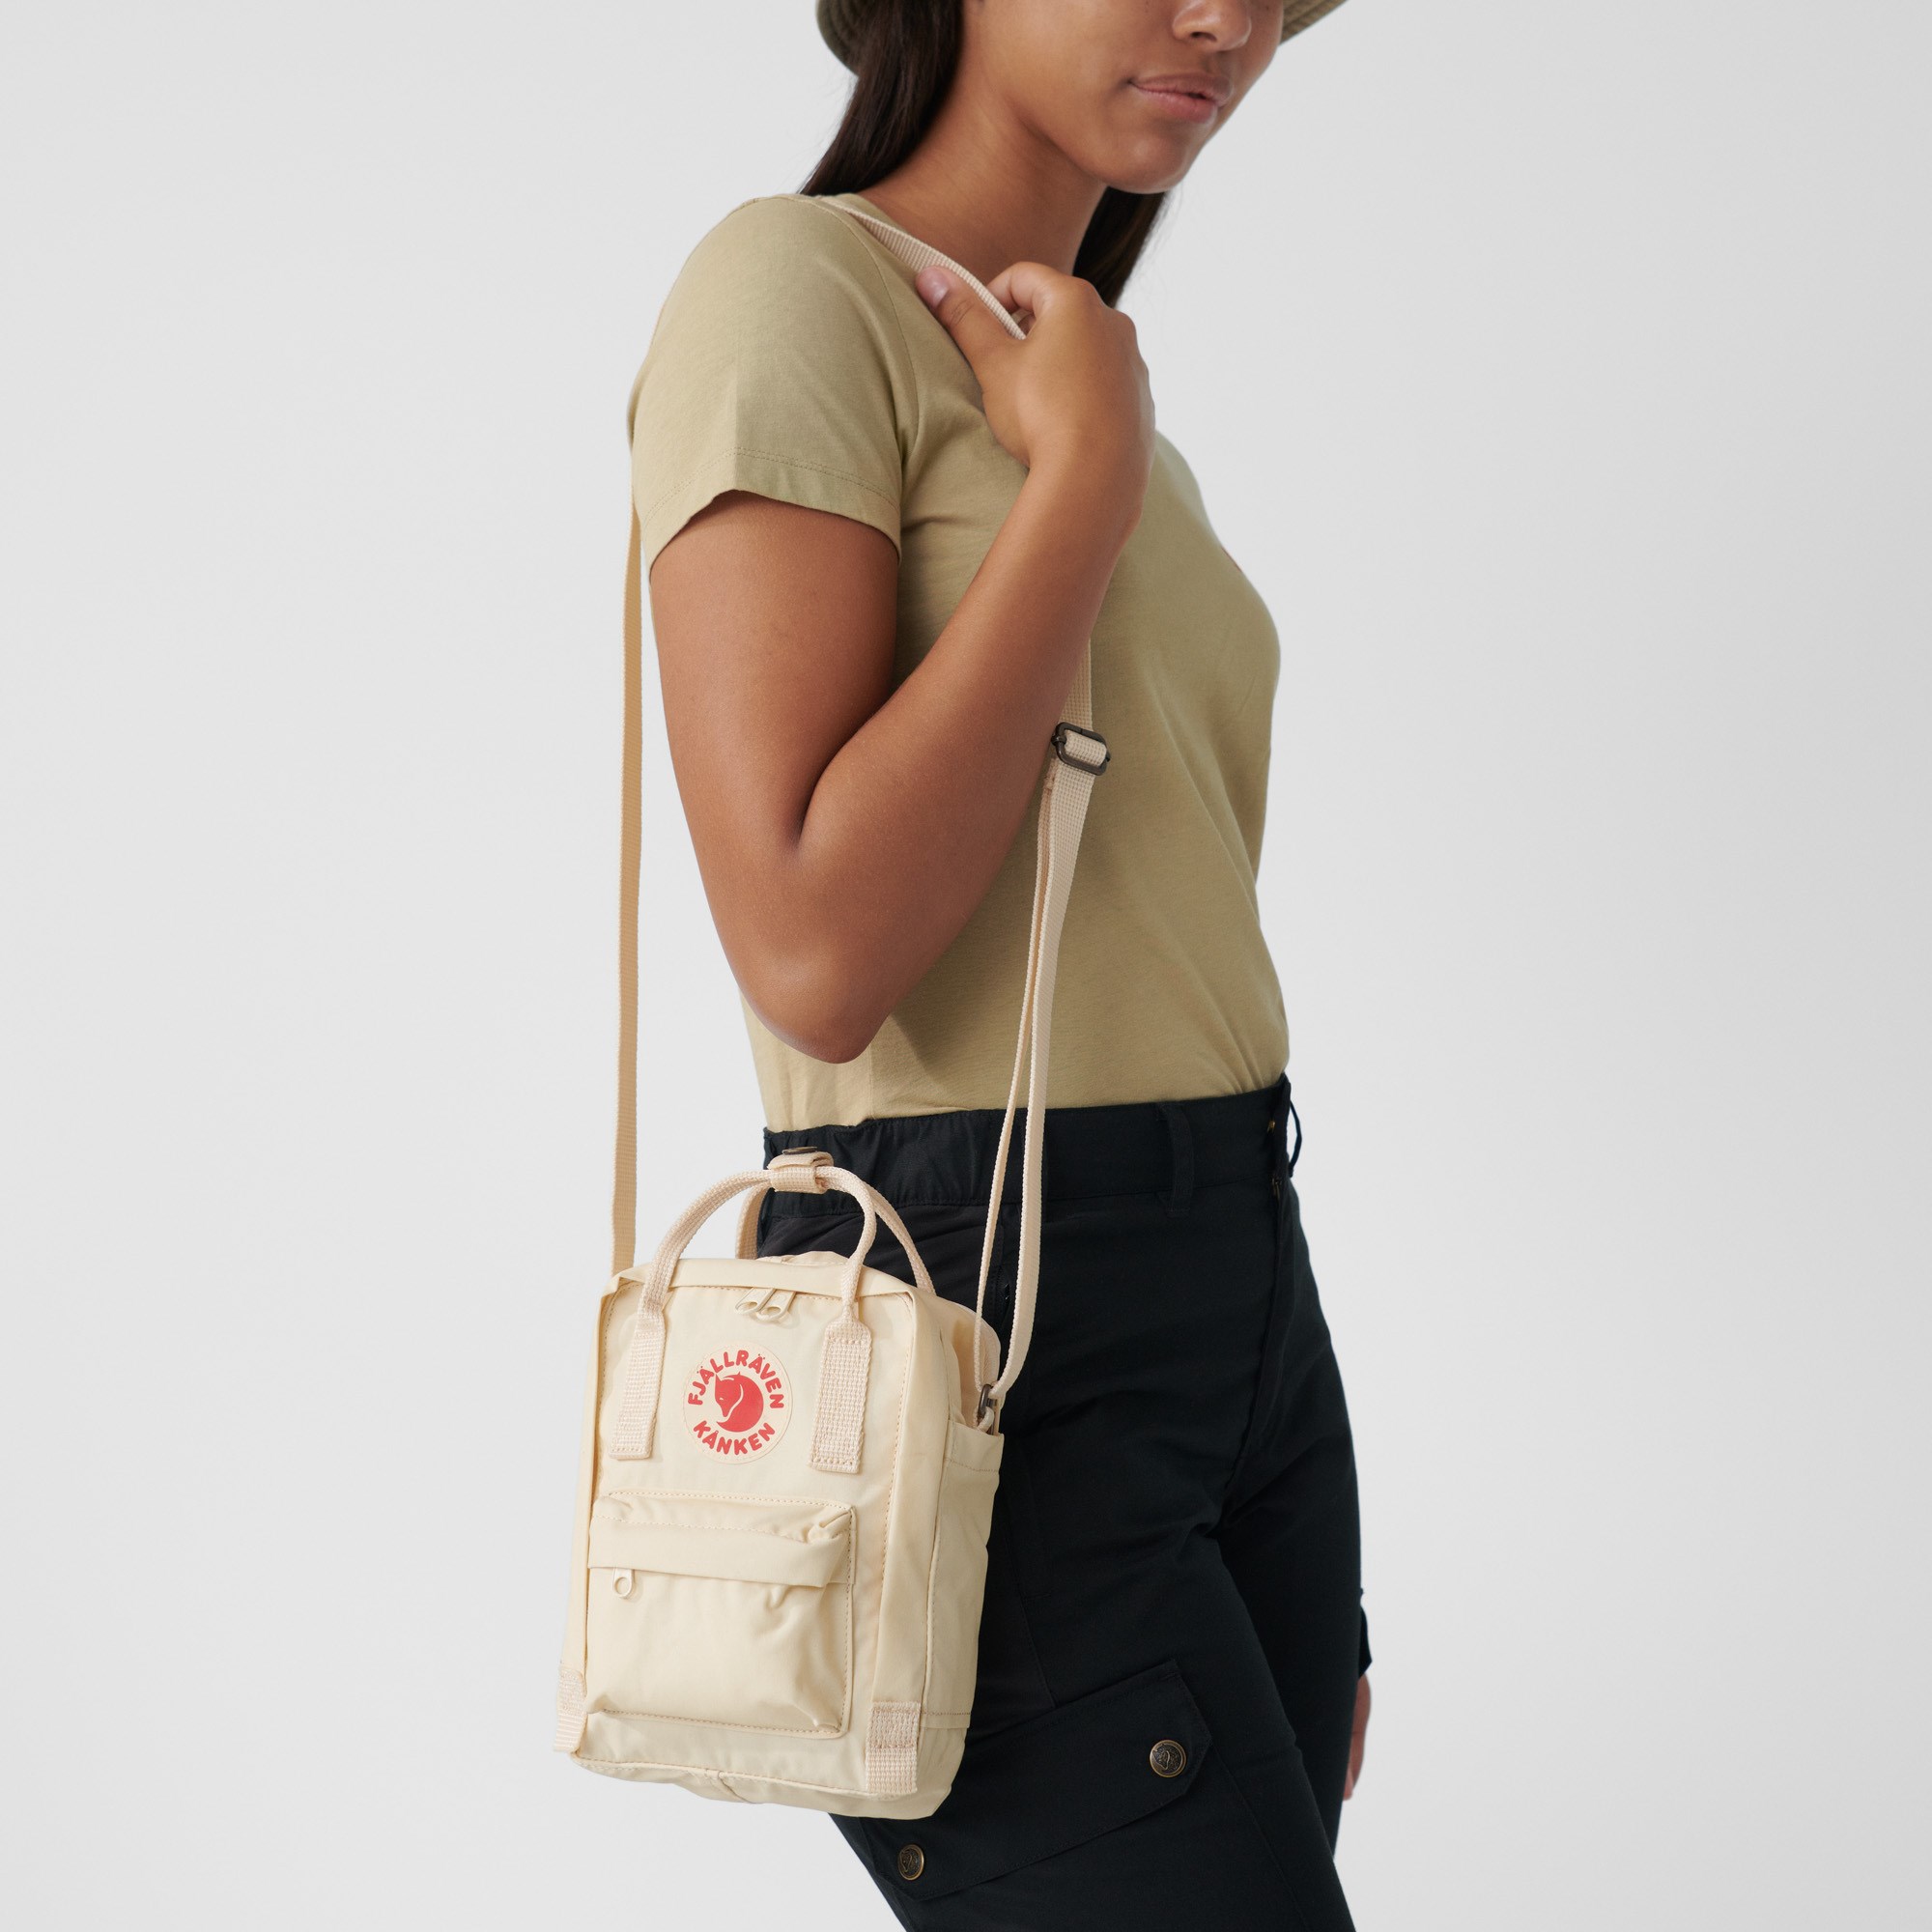 Fjallraven Kanken Sling Crossbody Shoulder Bag for Everyday Use and Travel Graphite